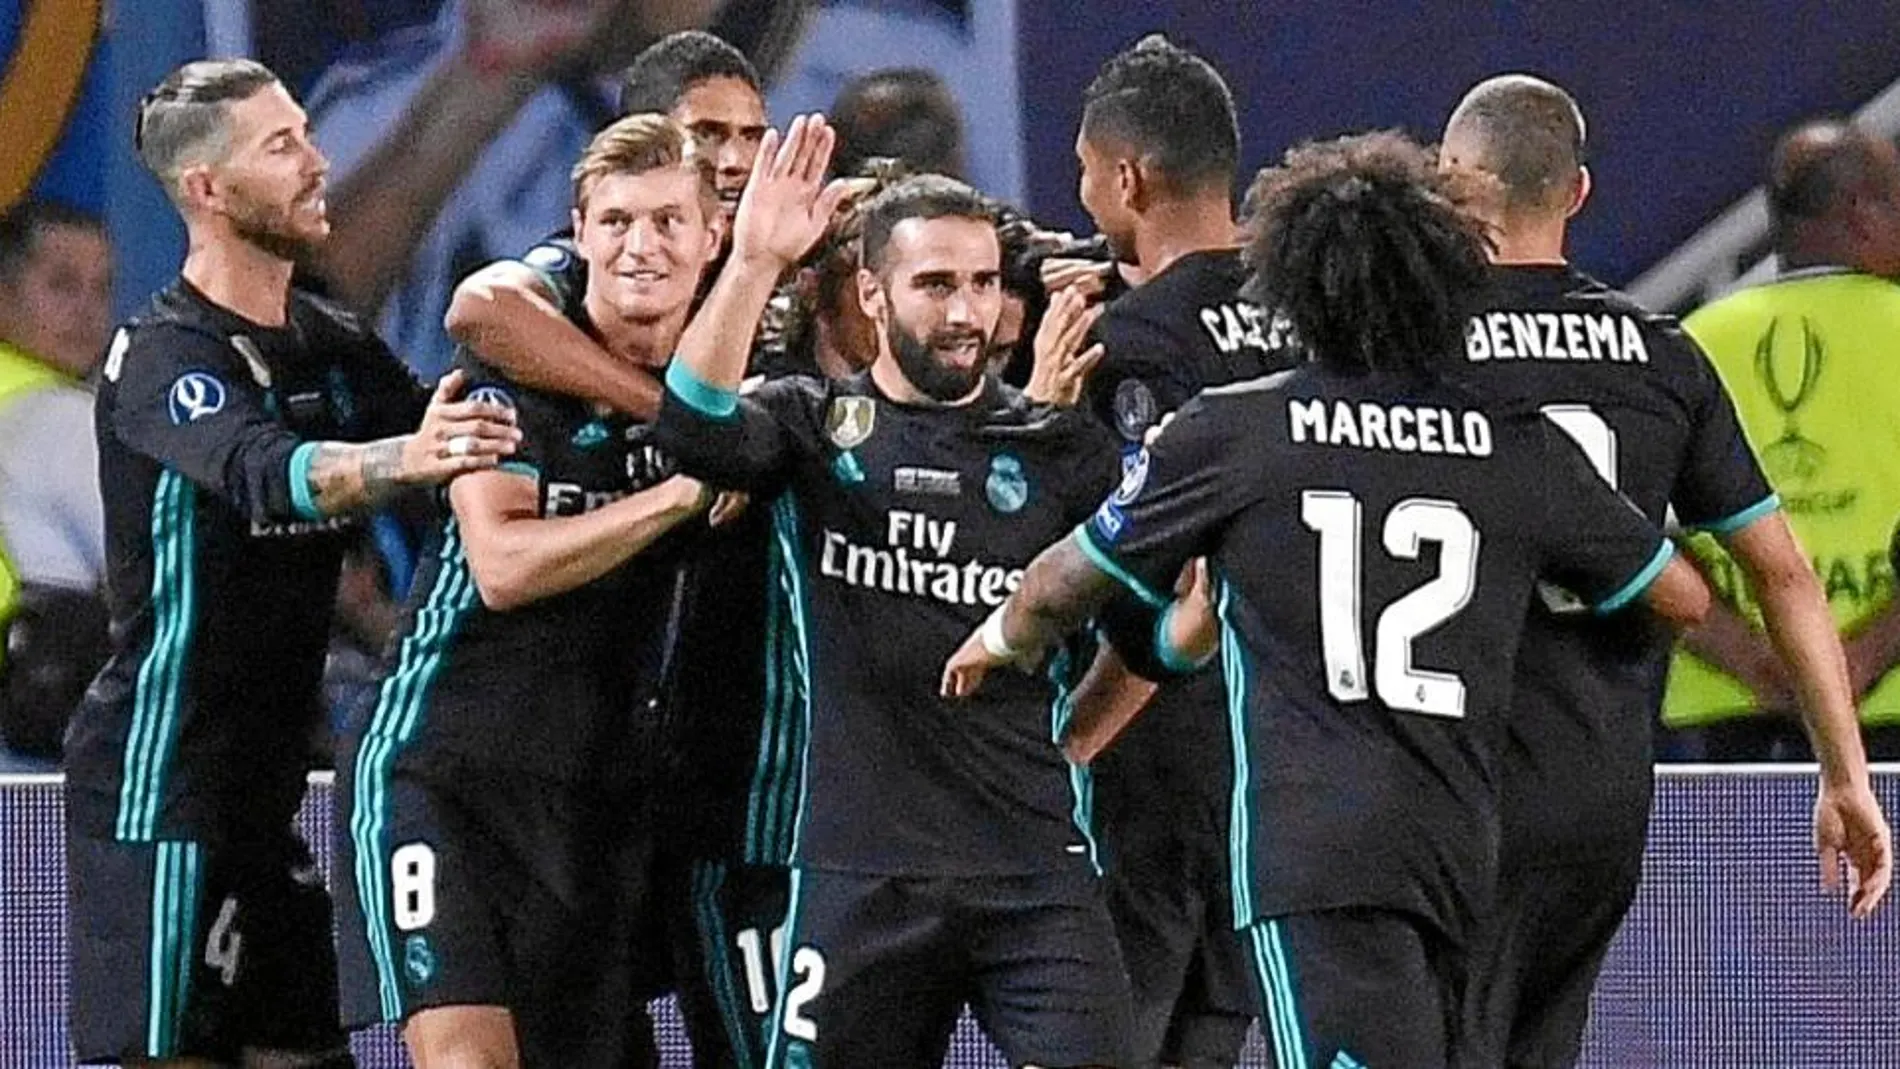 Partido de la Supercopa Real Madrid contra el Manchester retransmitido por Antena3 el 8 de agosto